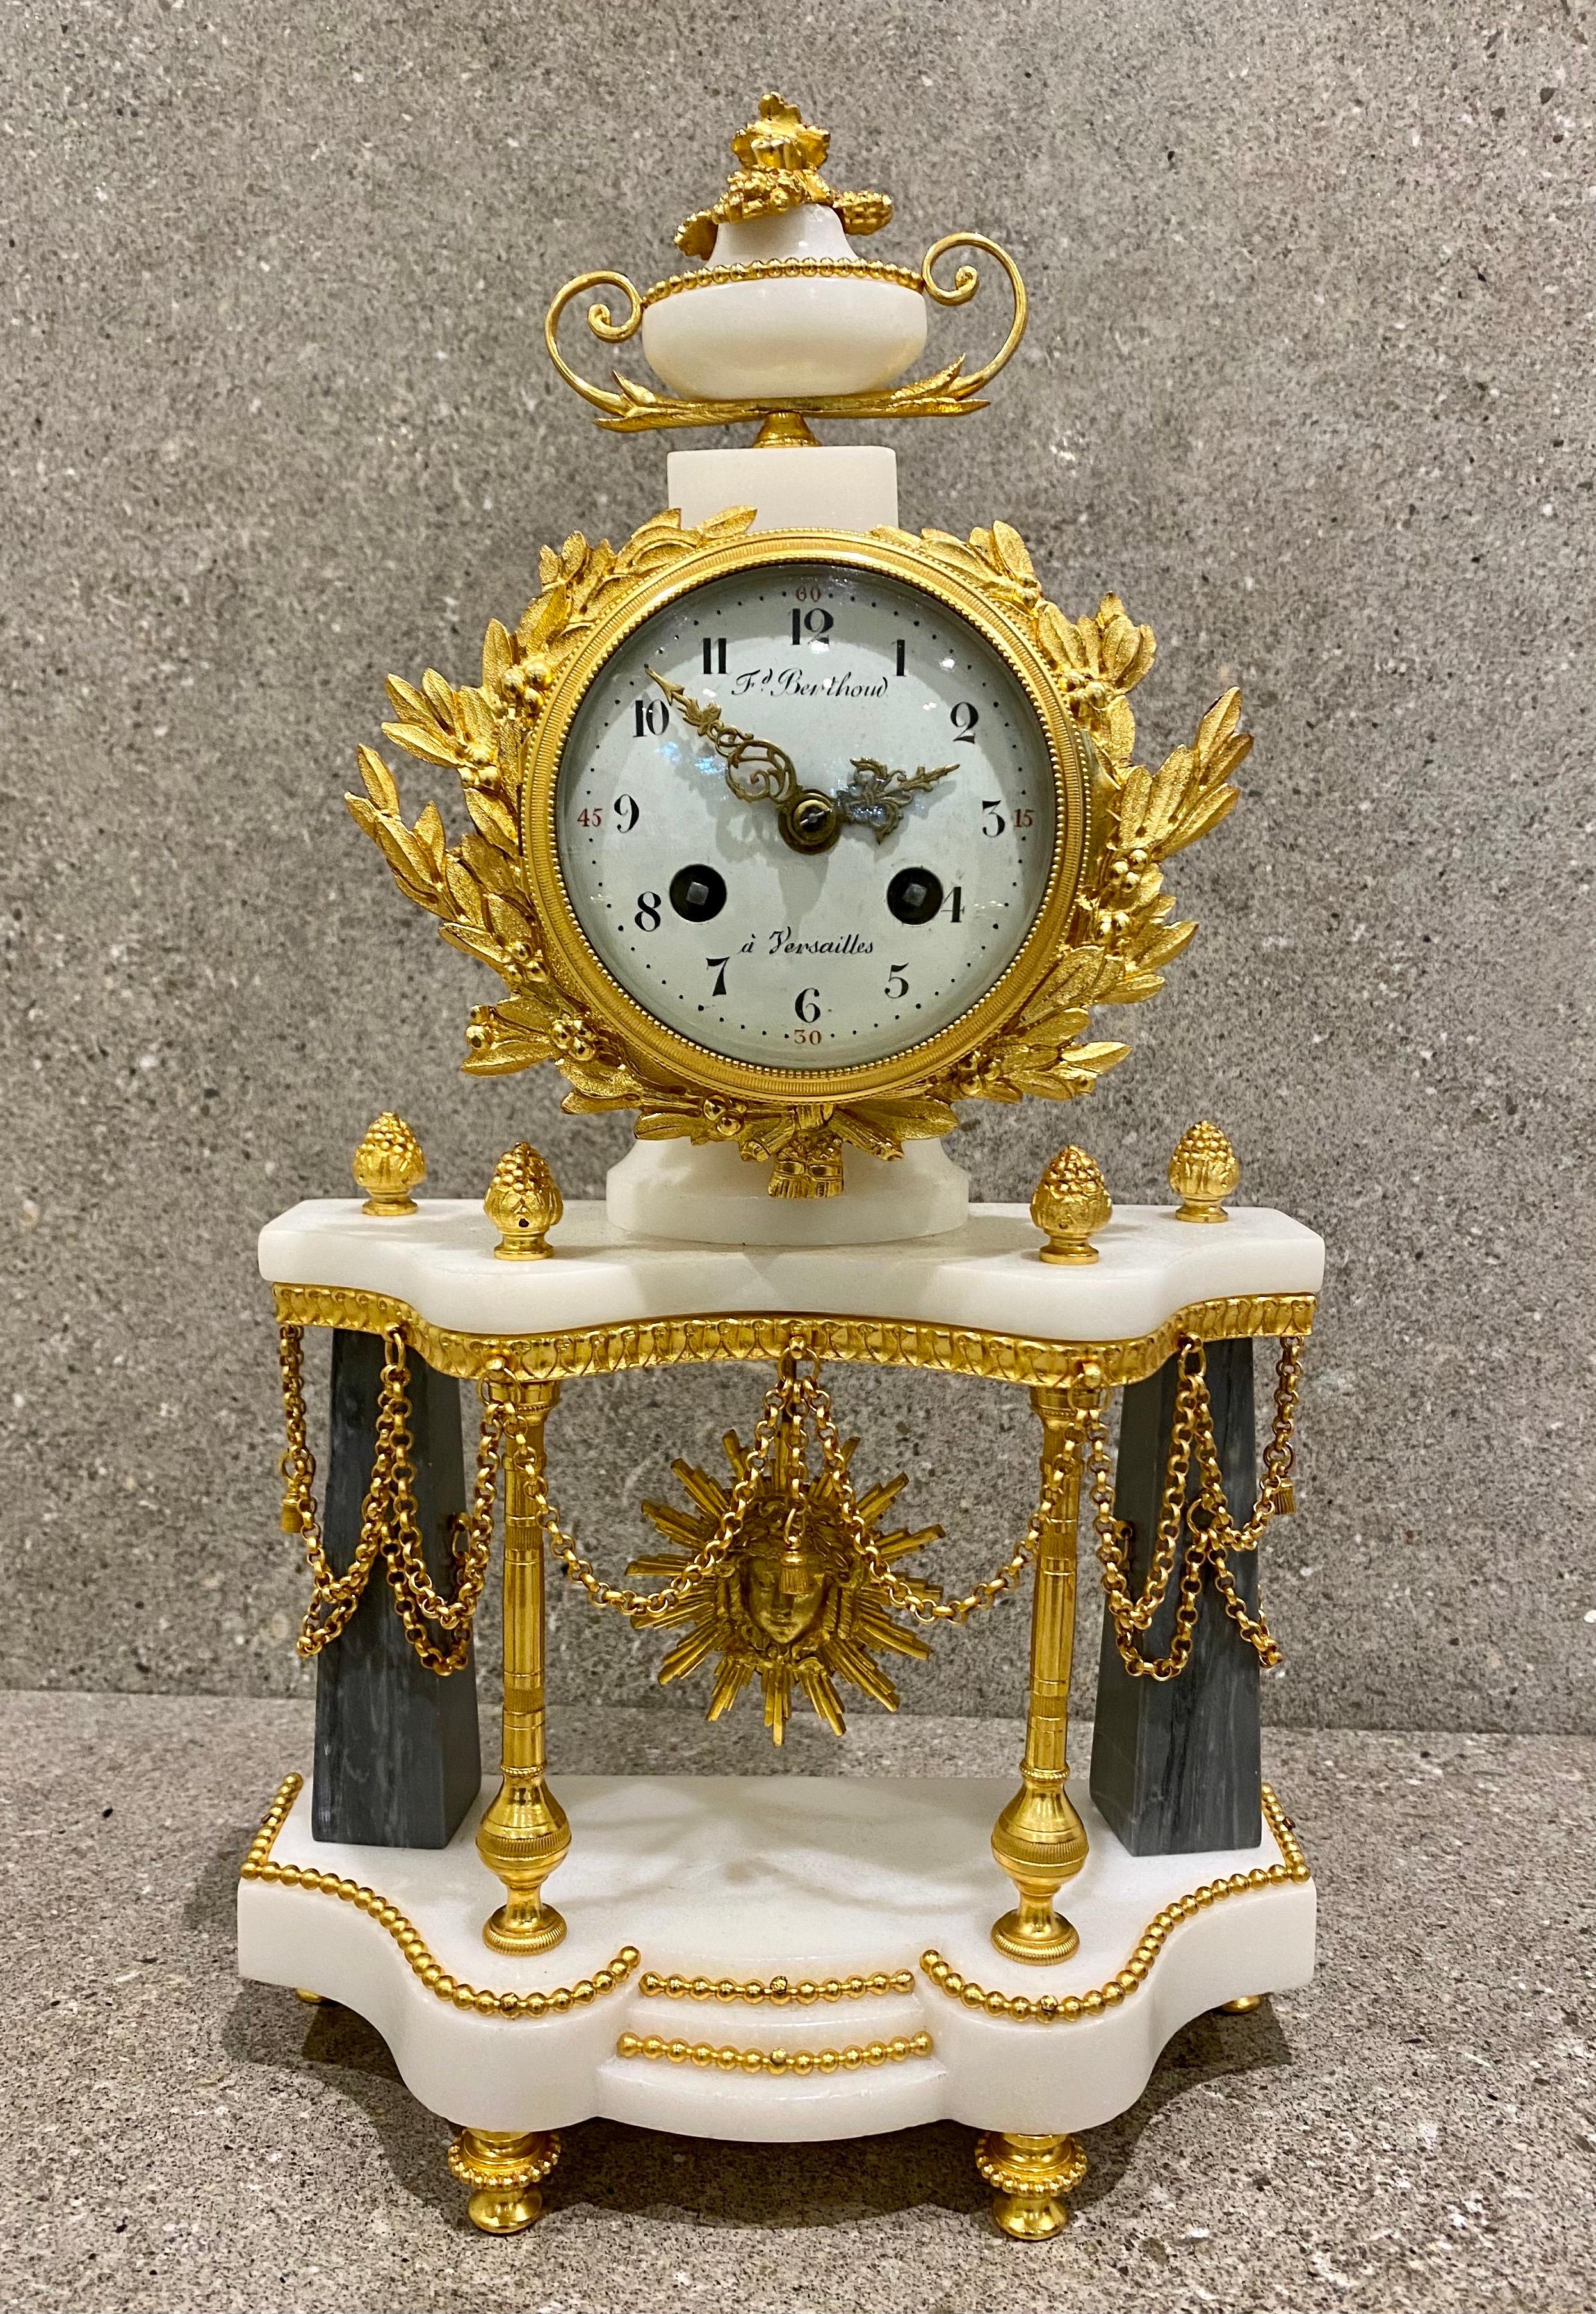 Très belle pendule Louis XVI en bronze doré, par Ferdinand Berthoud, Paris, vers 1770
Cet ensemble d'horloges est présenté en Bronze doré et Bleu Turqin et marbre blanc.
Une superbe combinaison rarement vue, en parfait état et prête à être exposée